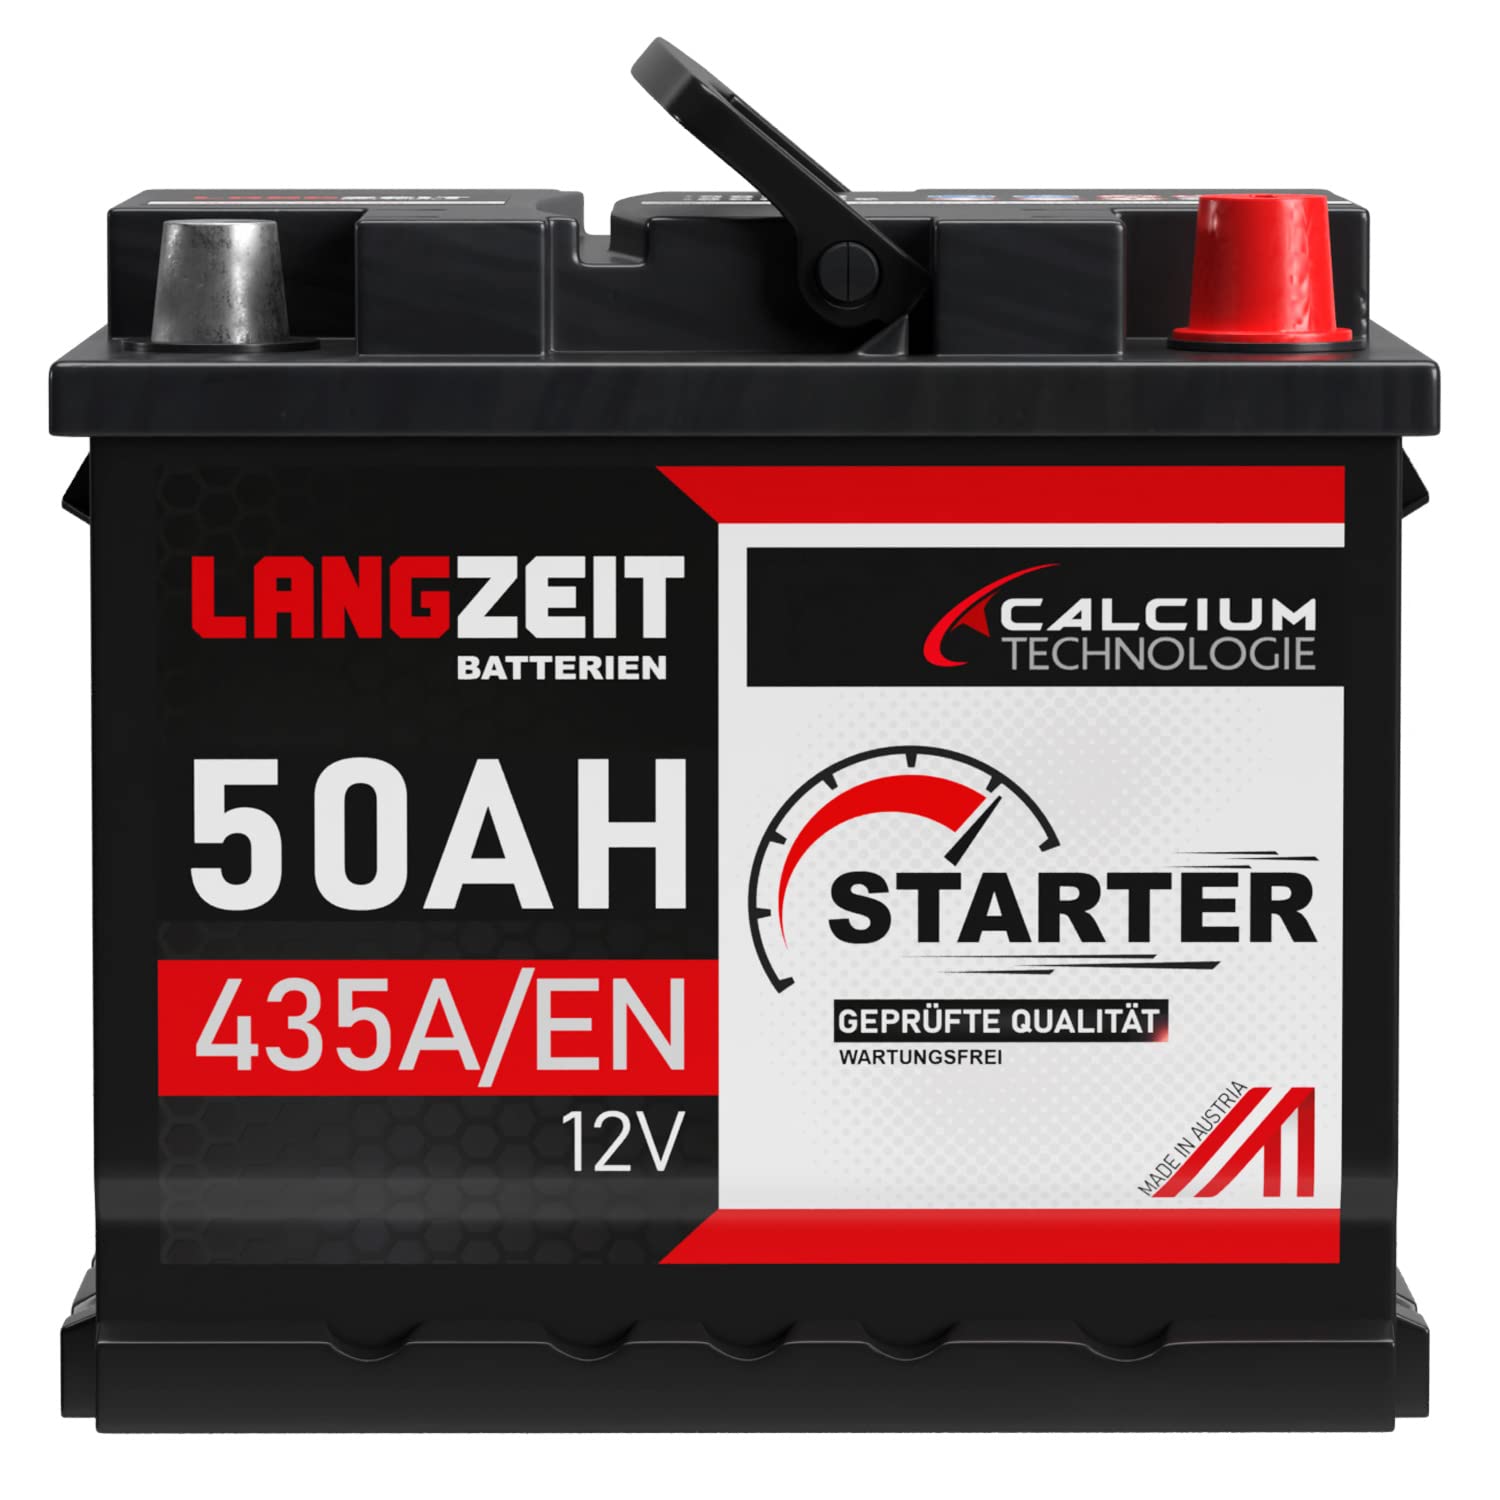 LANGZEIT Autobatterie 50AH 12V 440A/EN Starterbatterie +30% mehr Leistung ersetzt Batterie 44AH 45AH 46AH 47AH